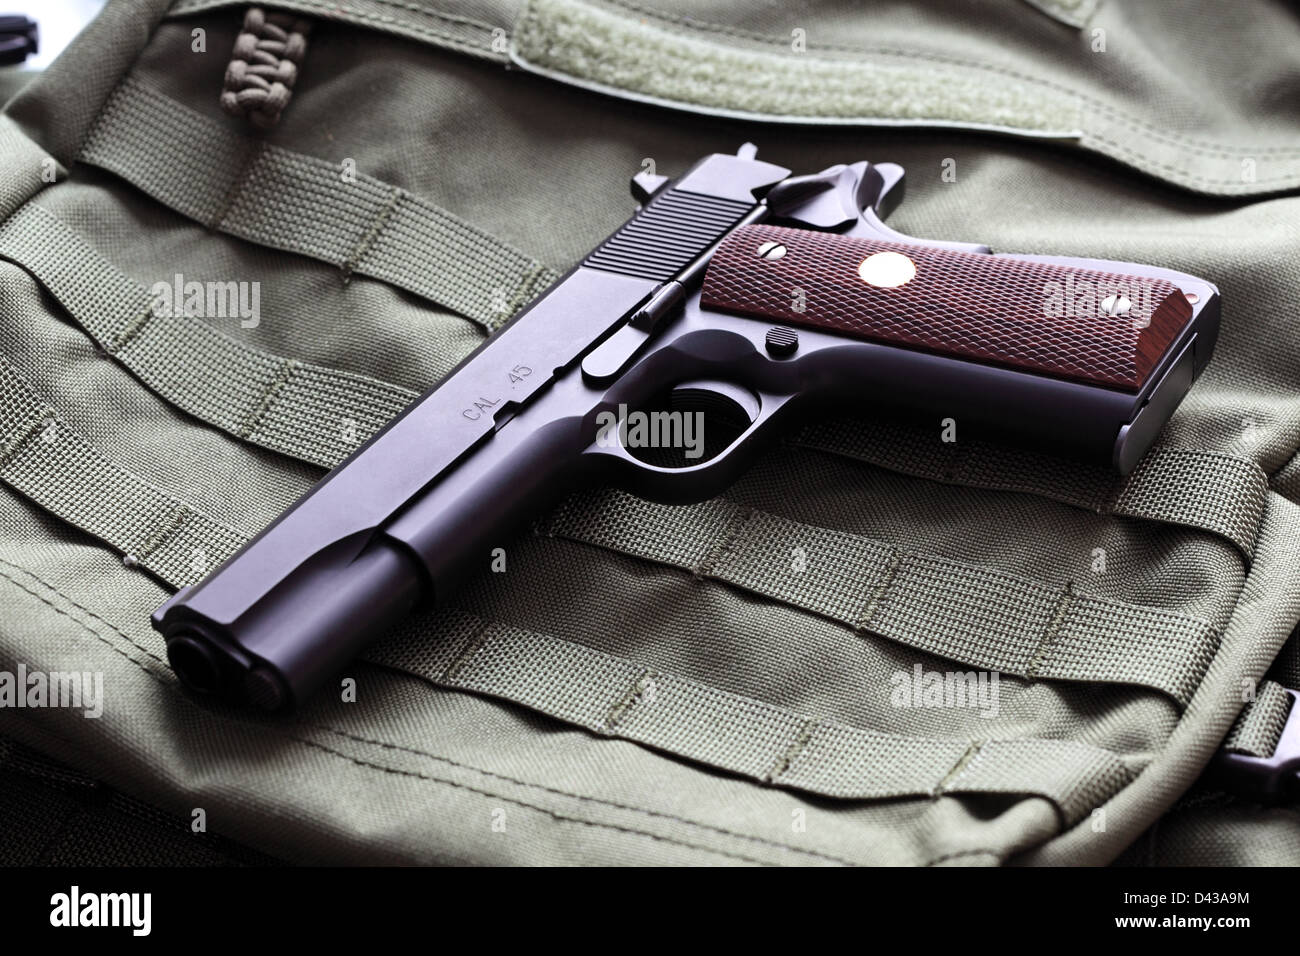 Halbautomatische Colt Mark IV Series 80 Kaliber.45 Pistole Stockfoto